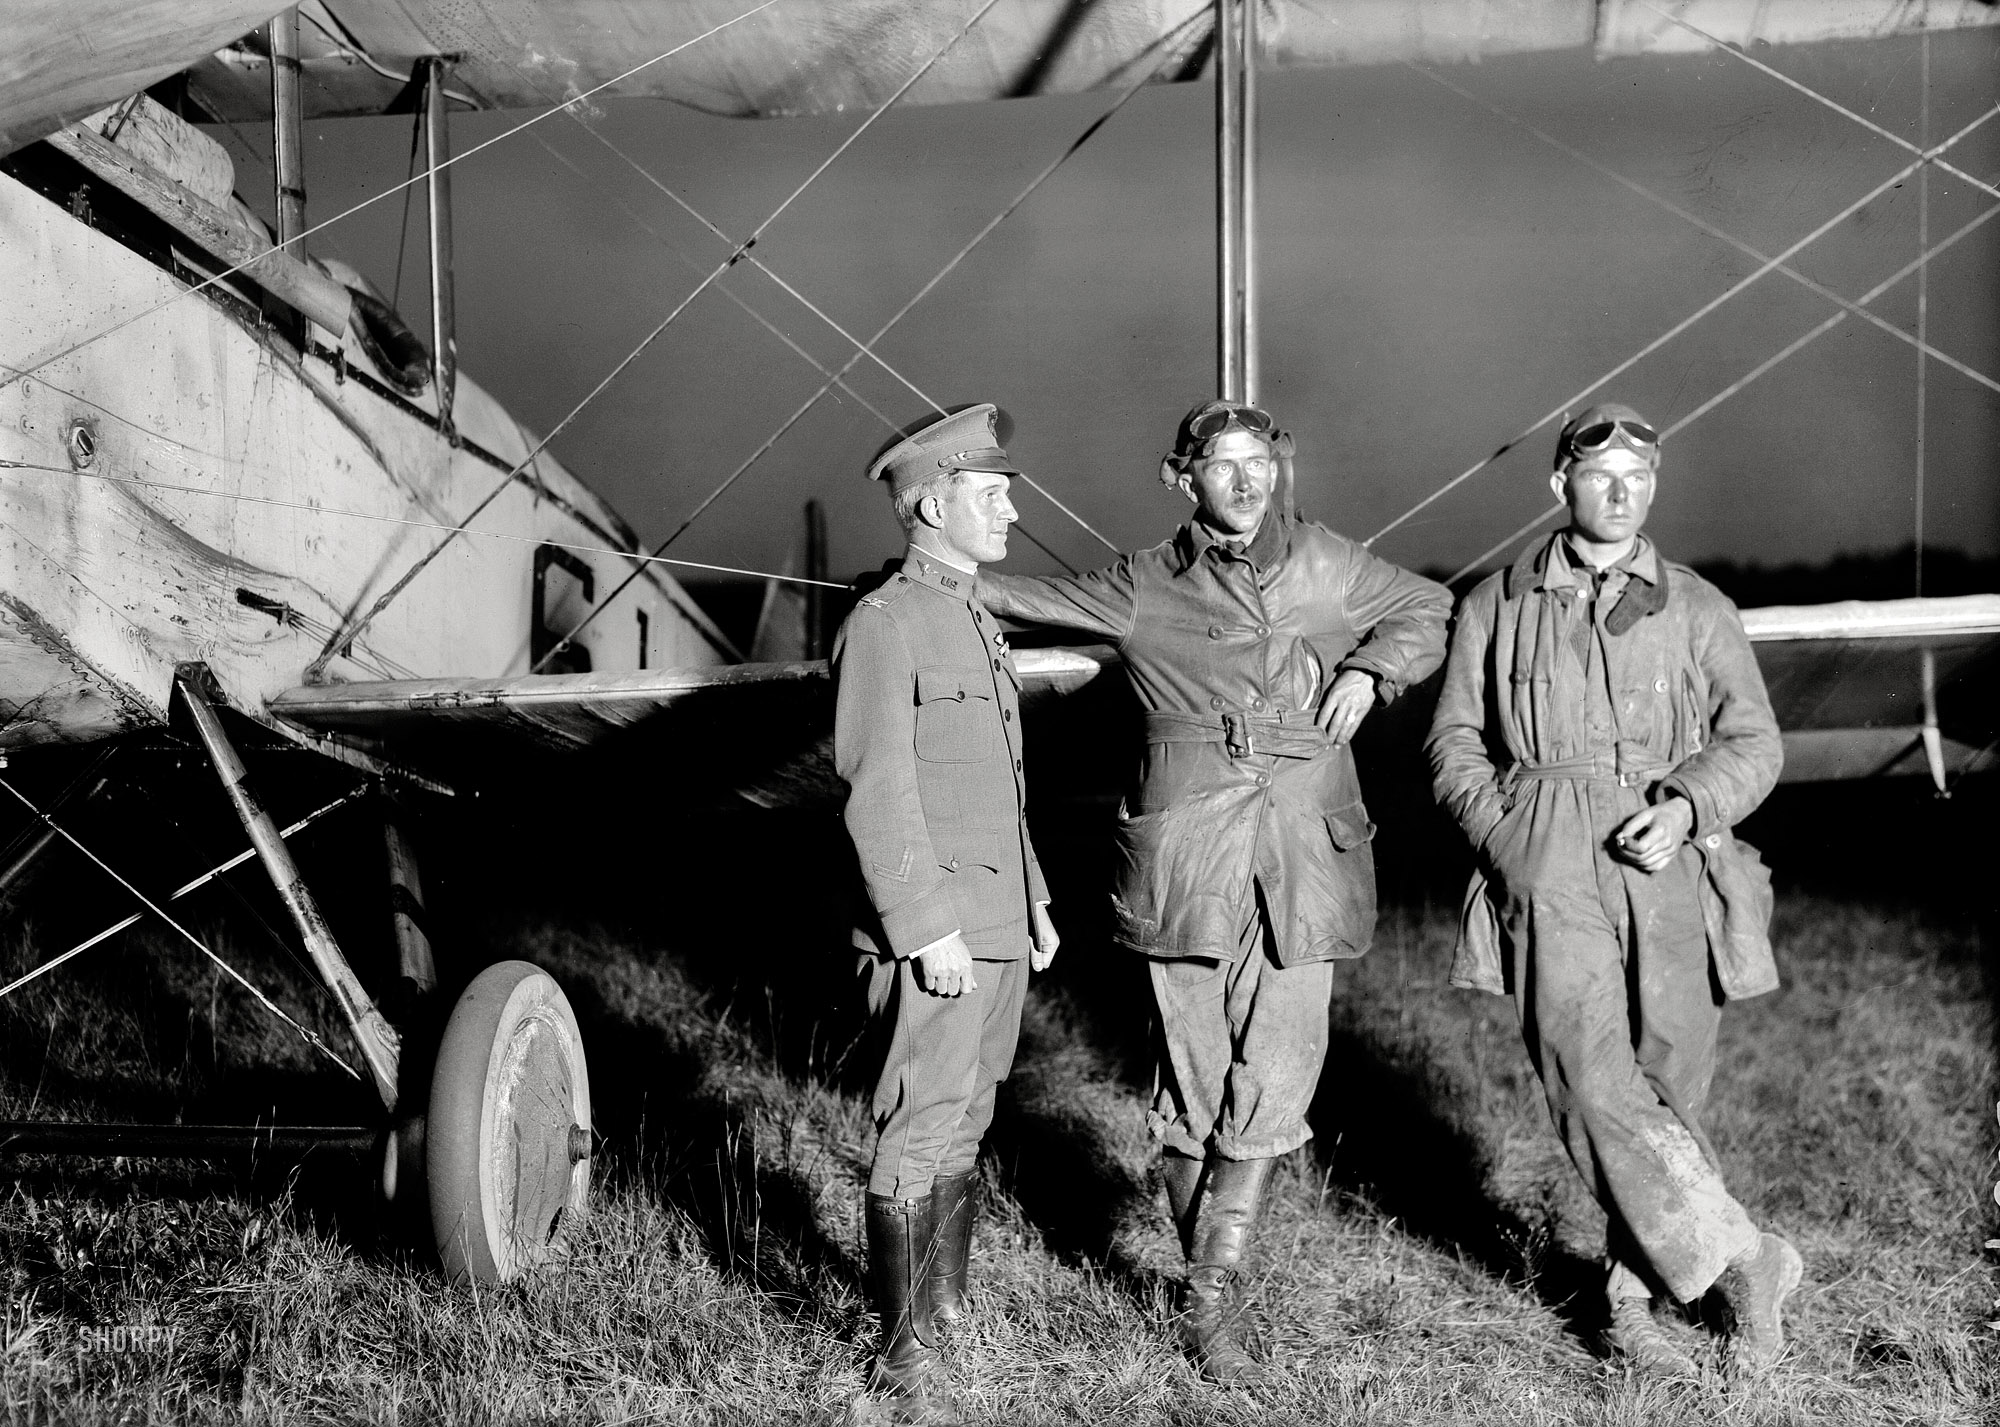 October 1919. "Transcontinental air race, Roosevelt Field, New York. Col. A. Miller, Lt. E.C. Kiel, Sgt. F.K. McKee." Bain News Service. View full size.